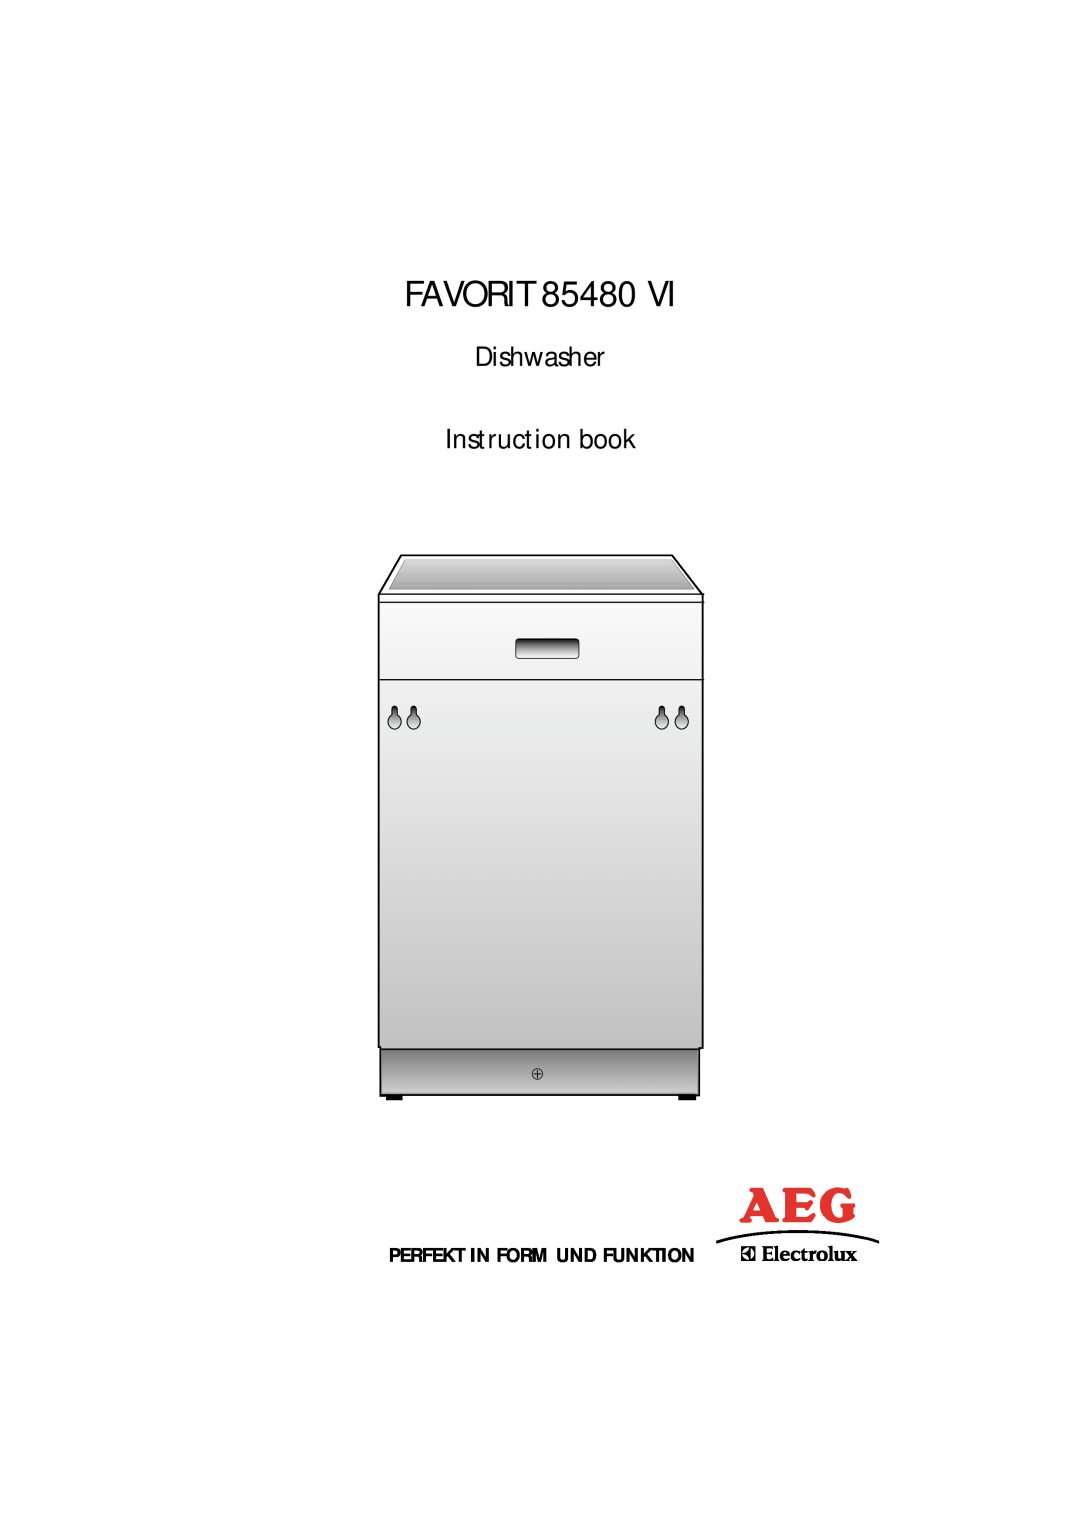 Electrolux 85480 VI manual Perfekt In Form Und Funktion, FAVORIT 85480, Dishwasher Instruction book 